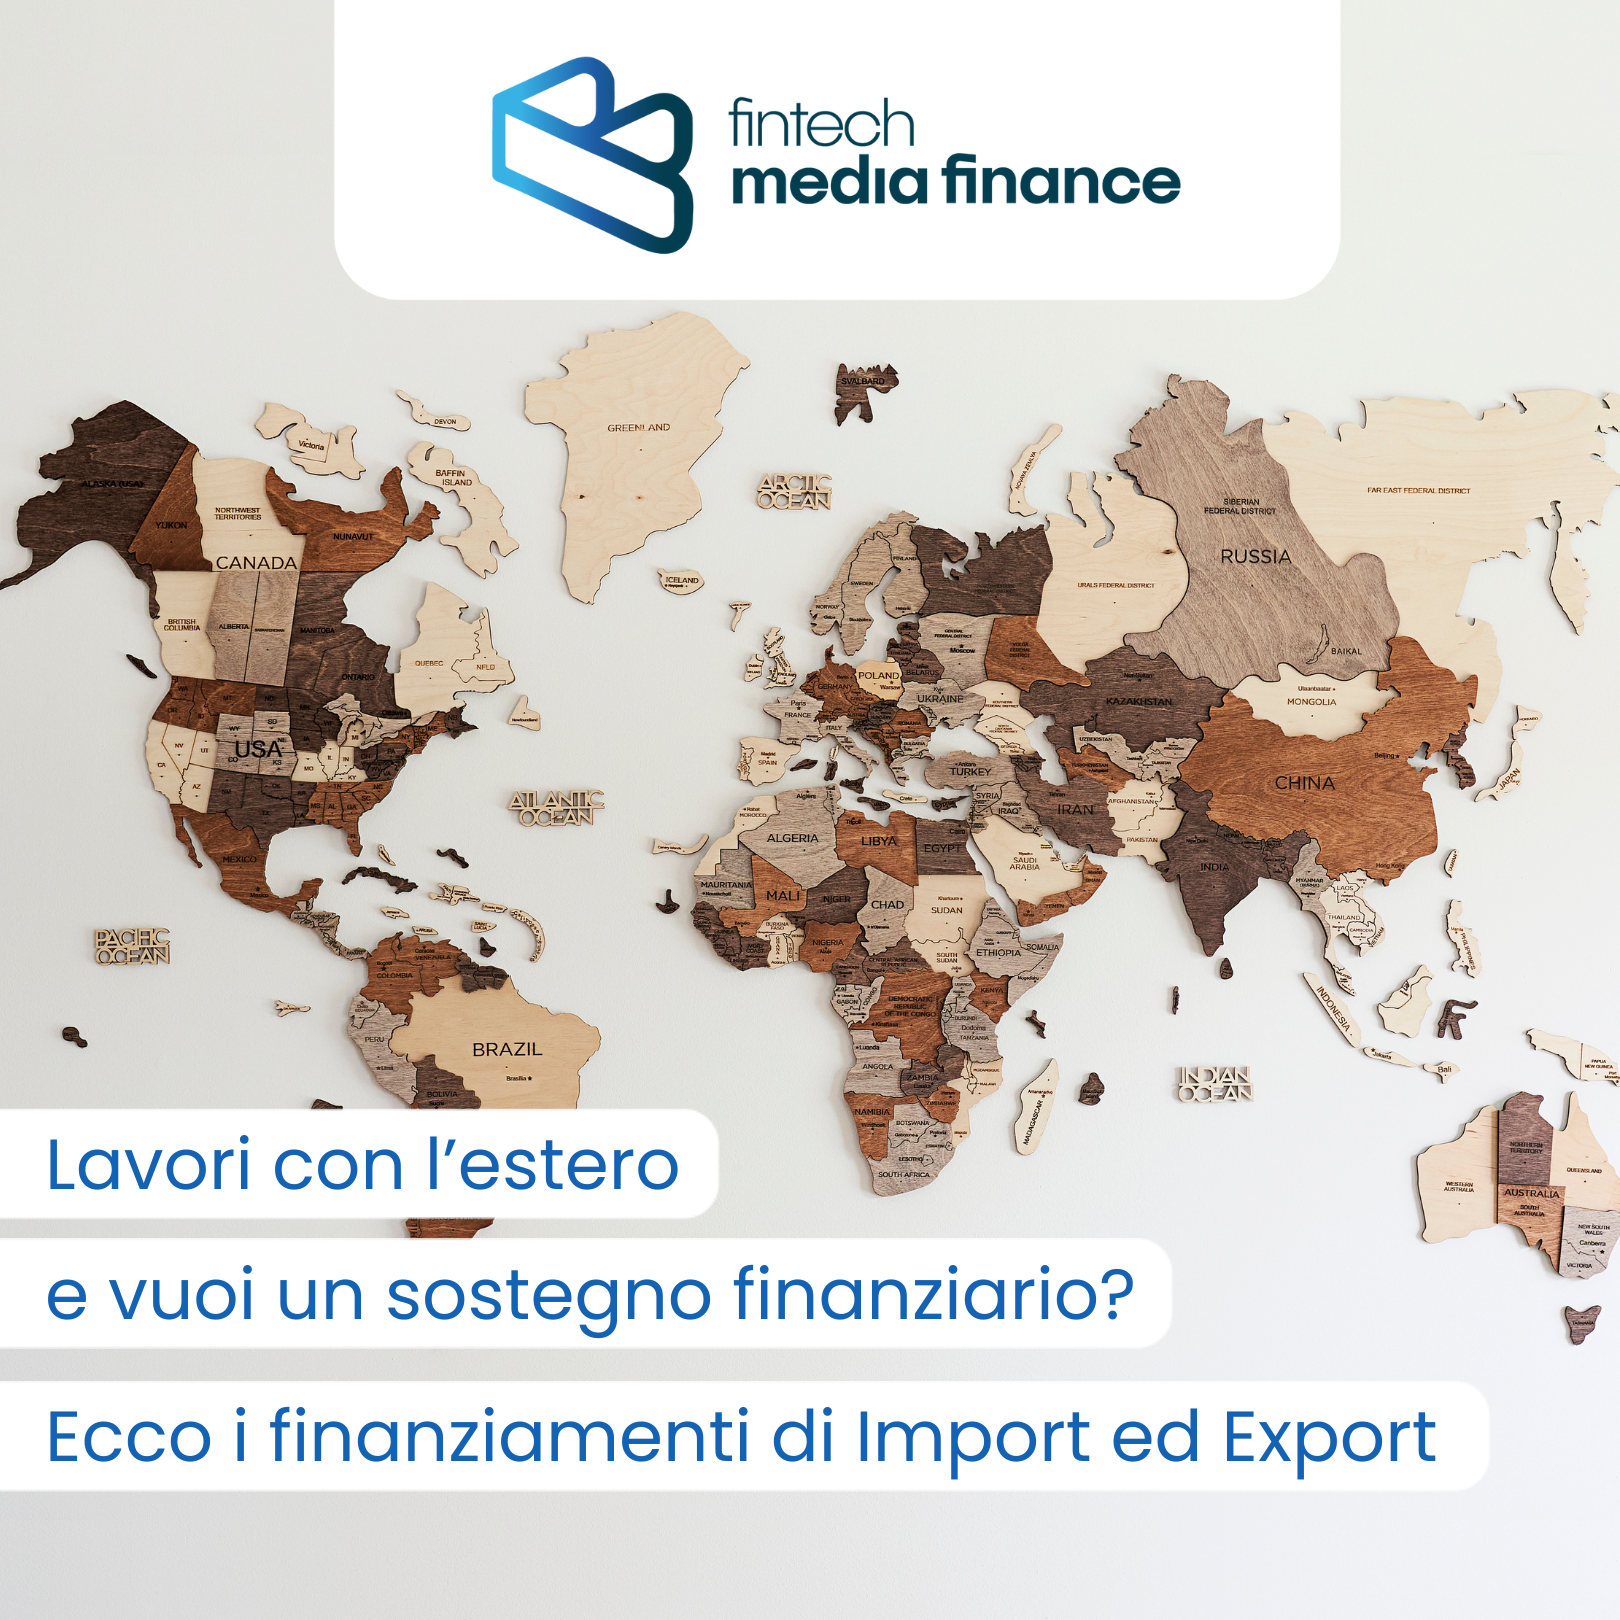 Se la tua impresa è attiva sul mercato internazionale, è fondamentale garantire una solida gestione finanziaria per sostenere le tue operazioni di import ed export.